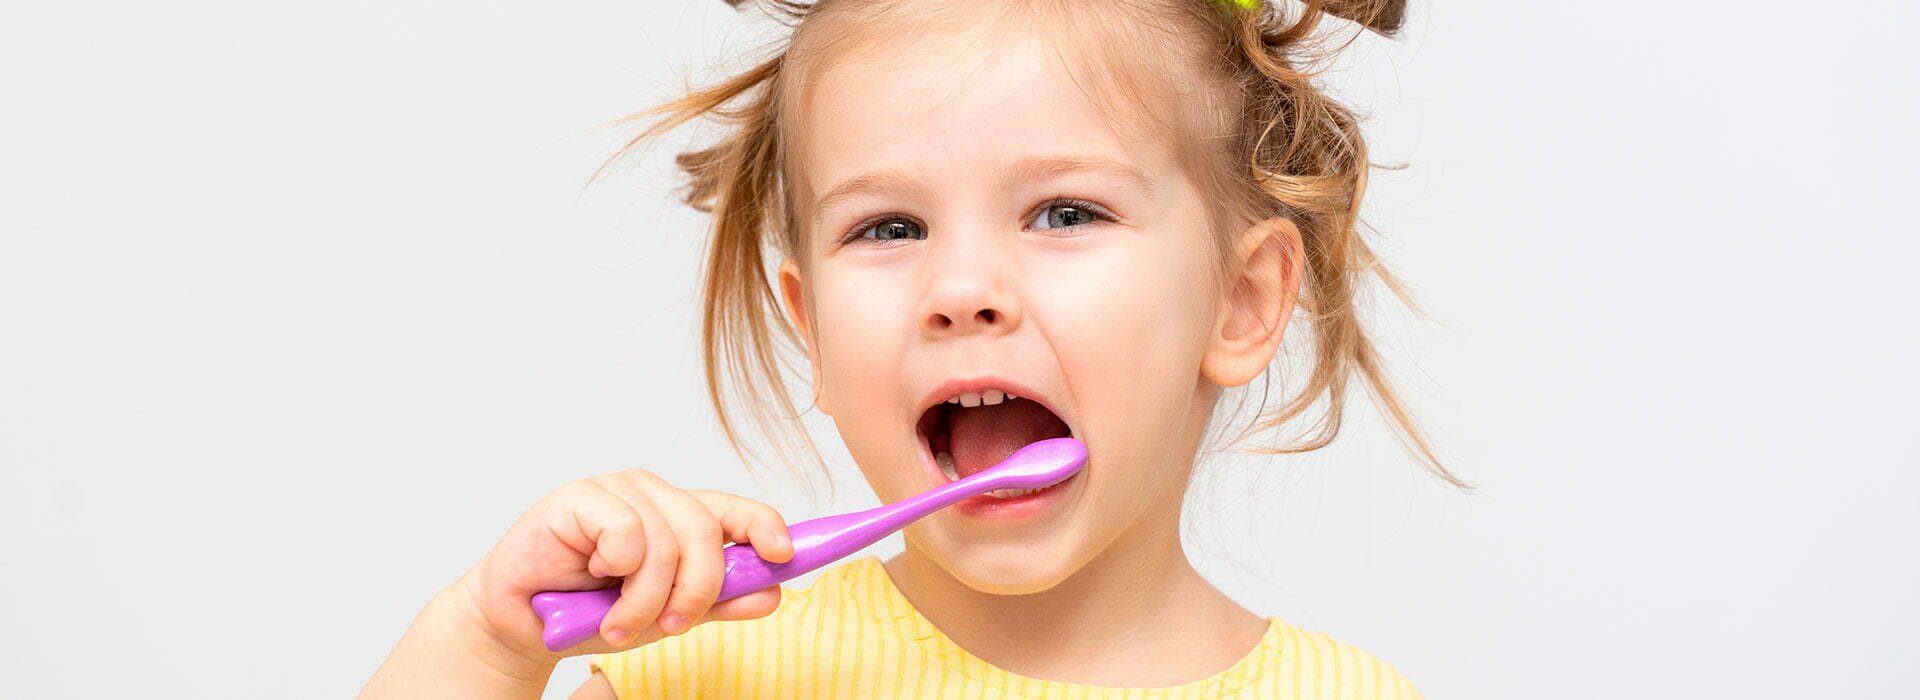 Zahnpflege Schulkinder